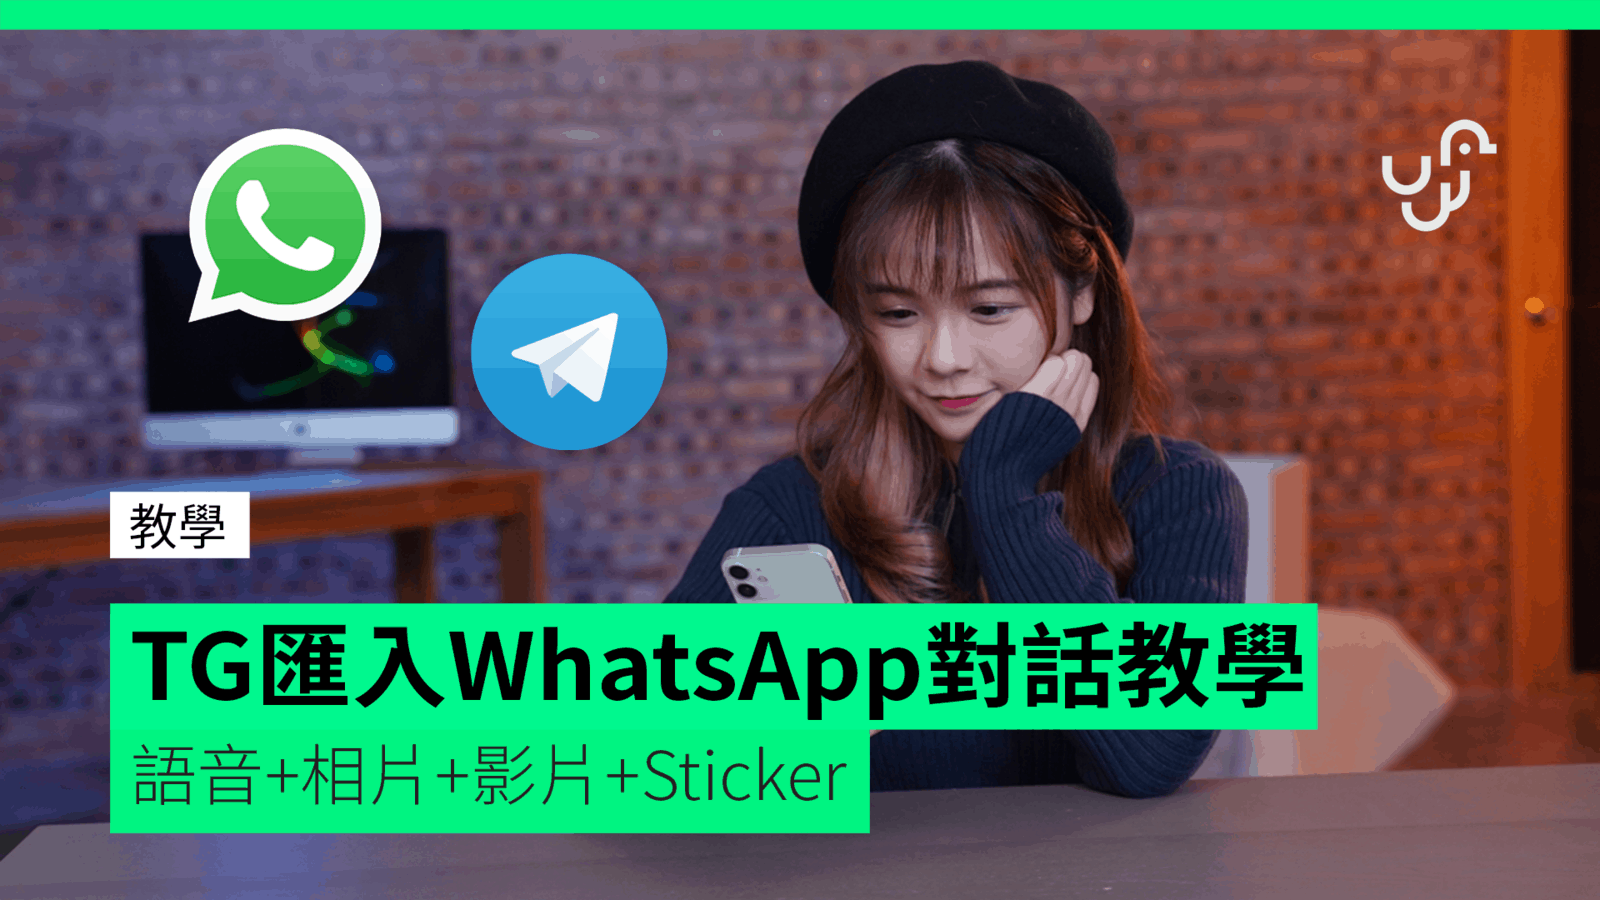 【教學】 TG 匯入 WhatsApp 對話教學 語音 + 相片 + 影片 + Sticker unwire.hk 香港